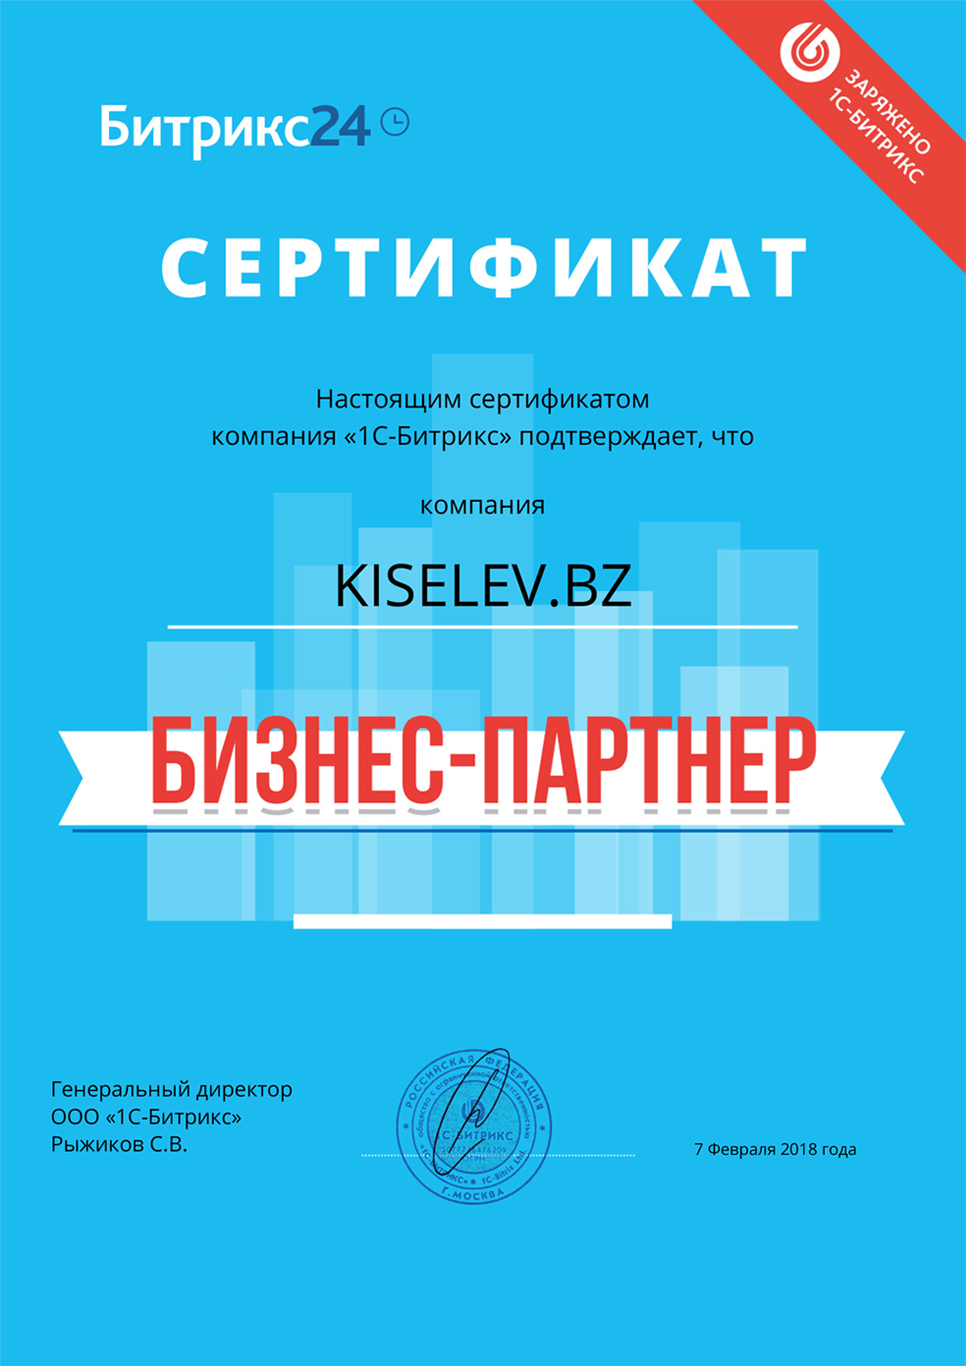 Сертификат партнёра по АМОСРМ в Дмитриеве-Льговском